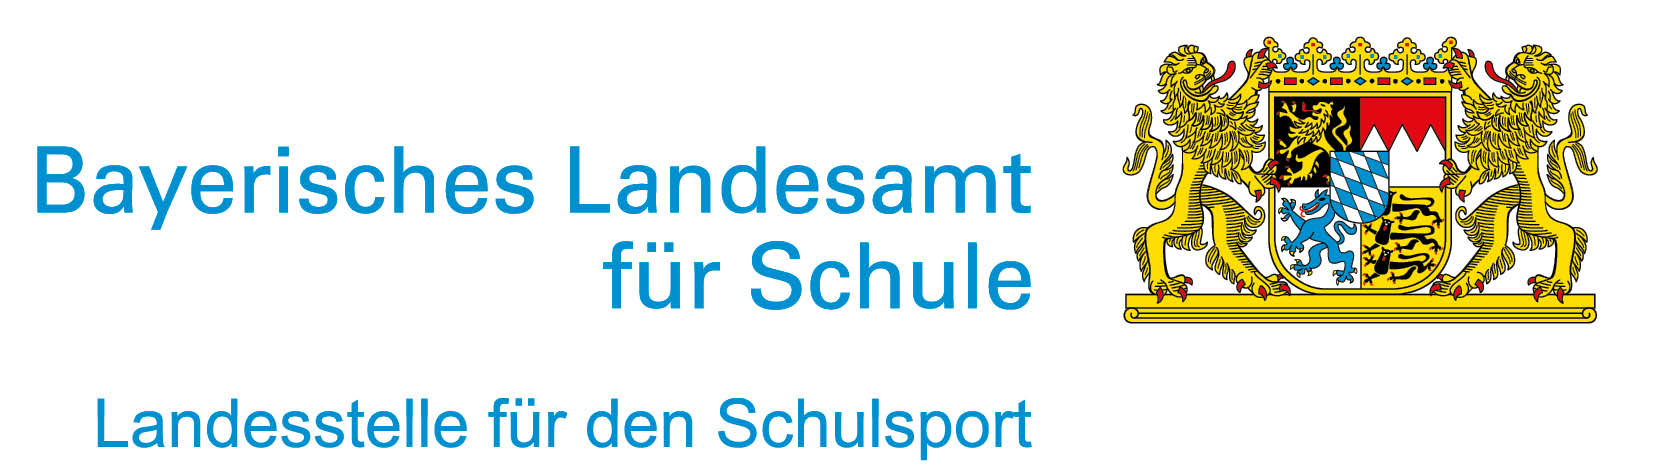 Bayerische Landesstelle für den Schulsport